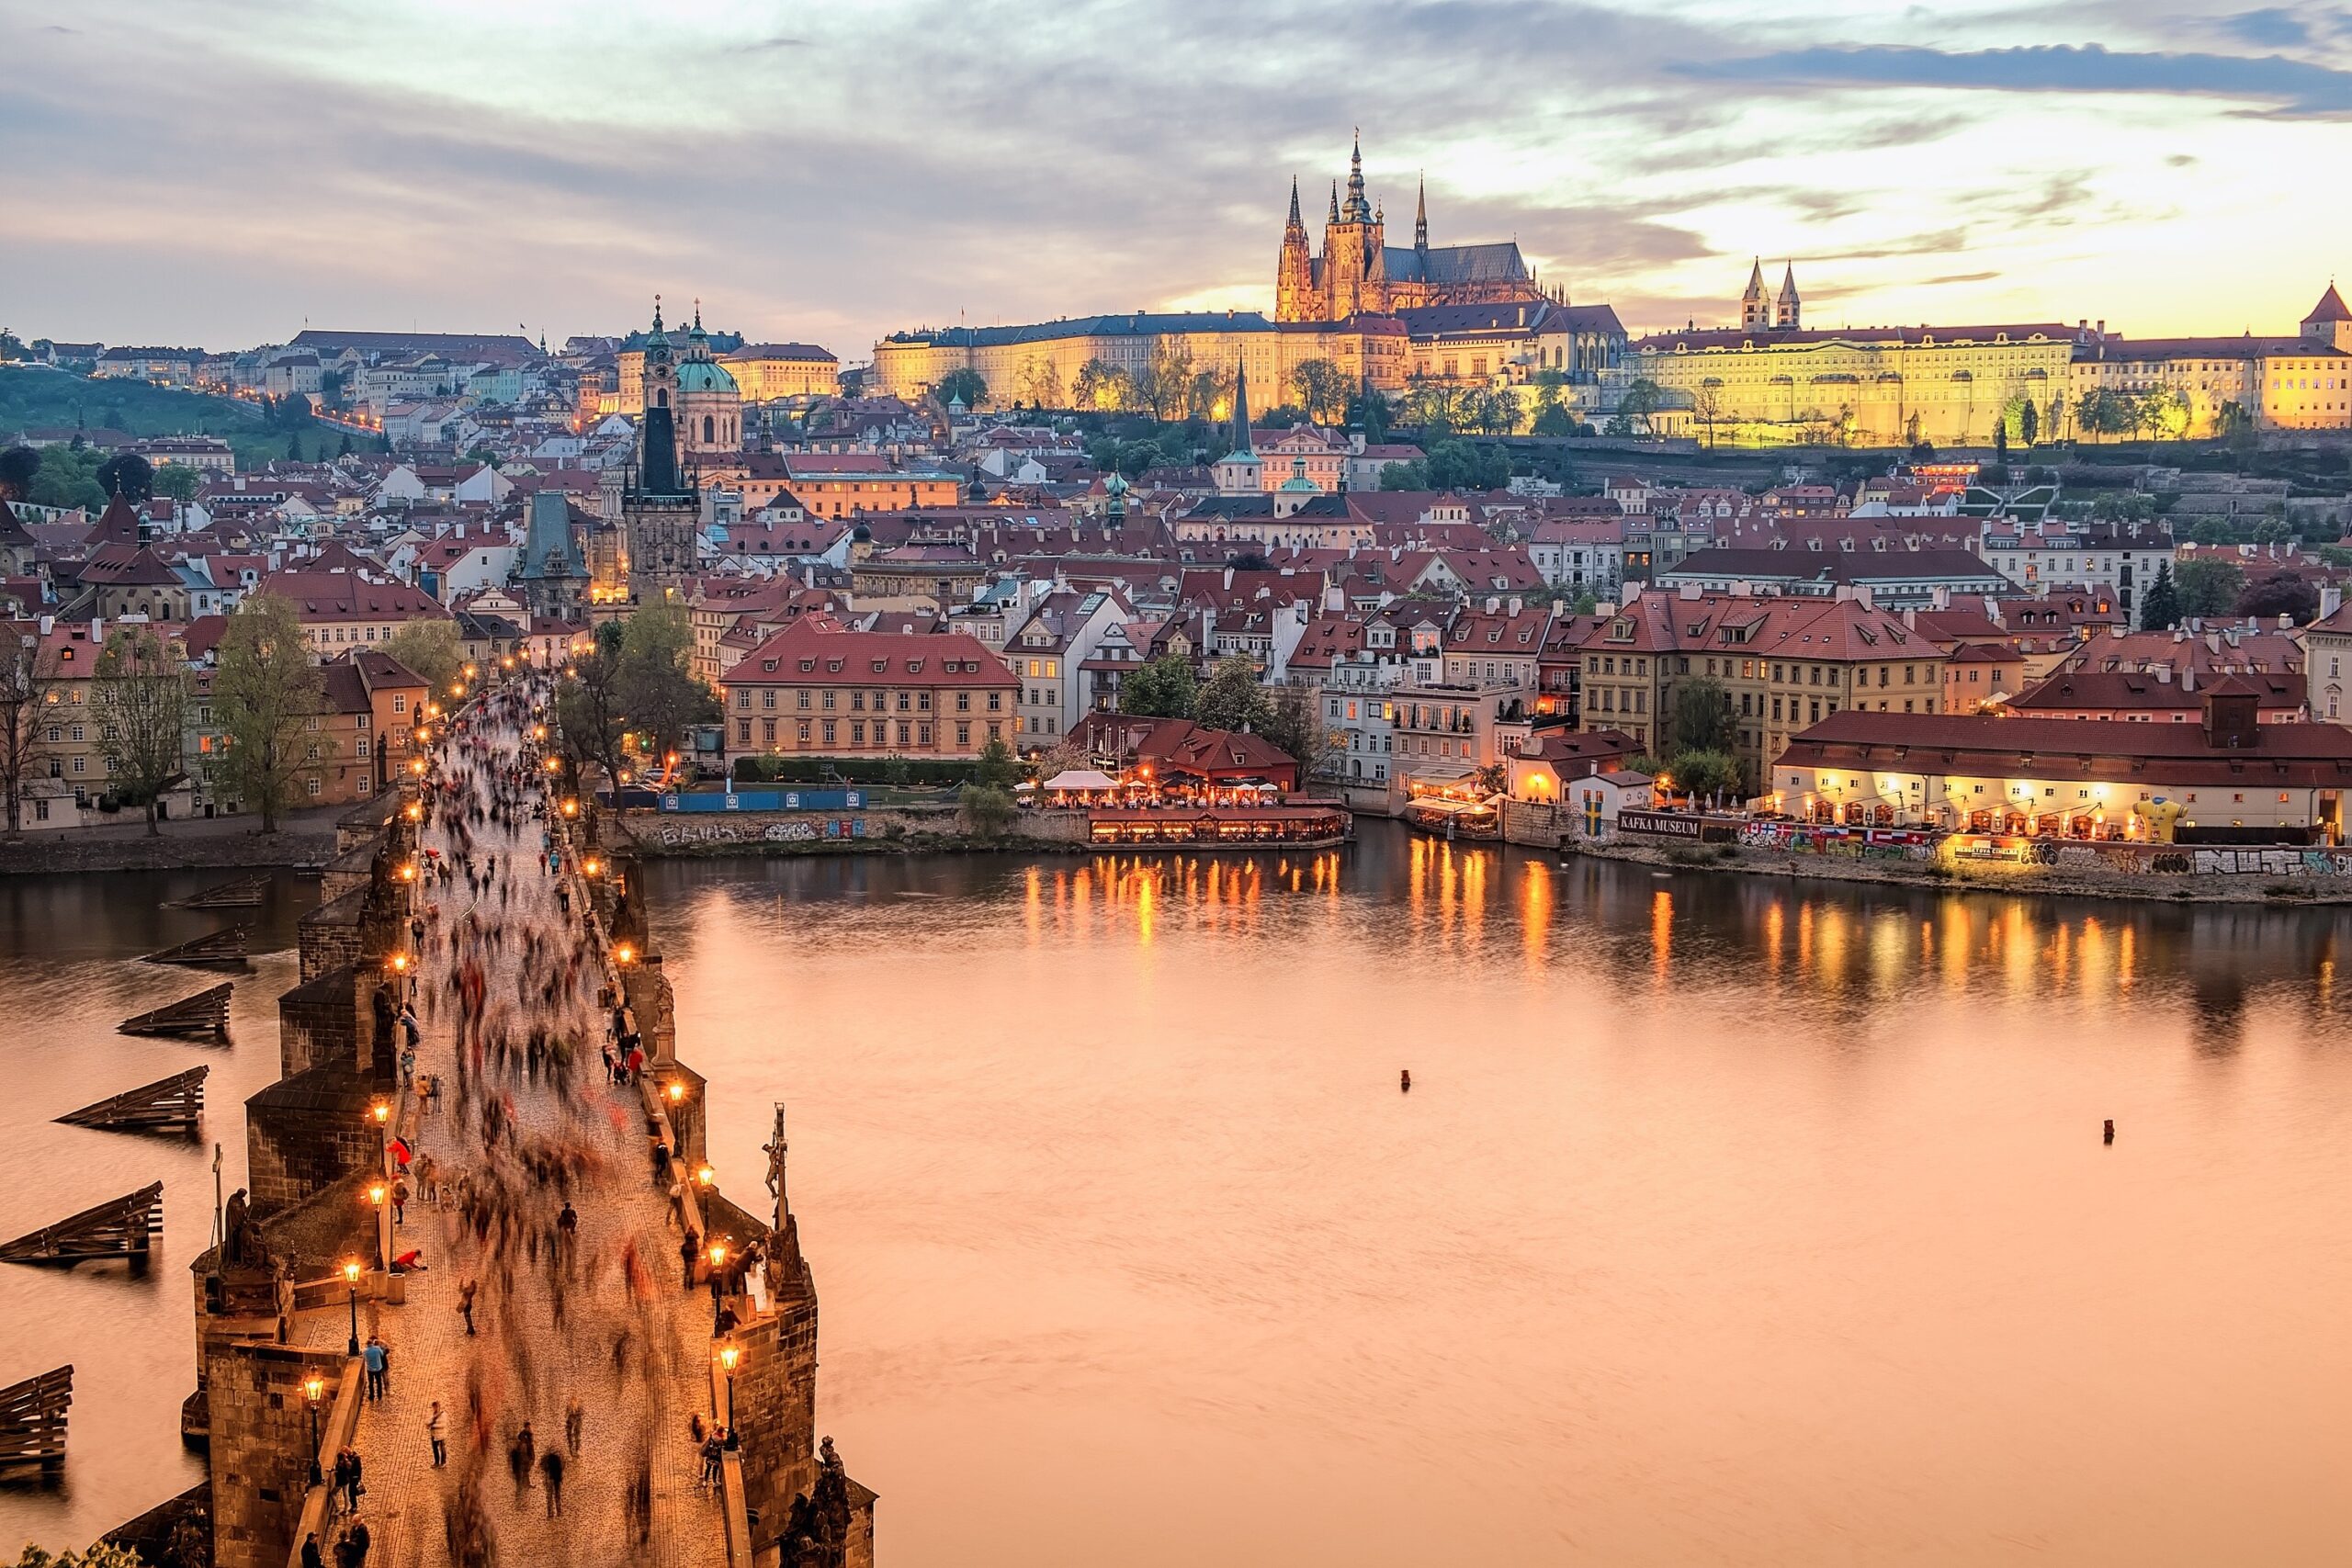 Il mercato immobiliare a Praga: tendenze e prospettive future